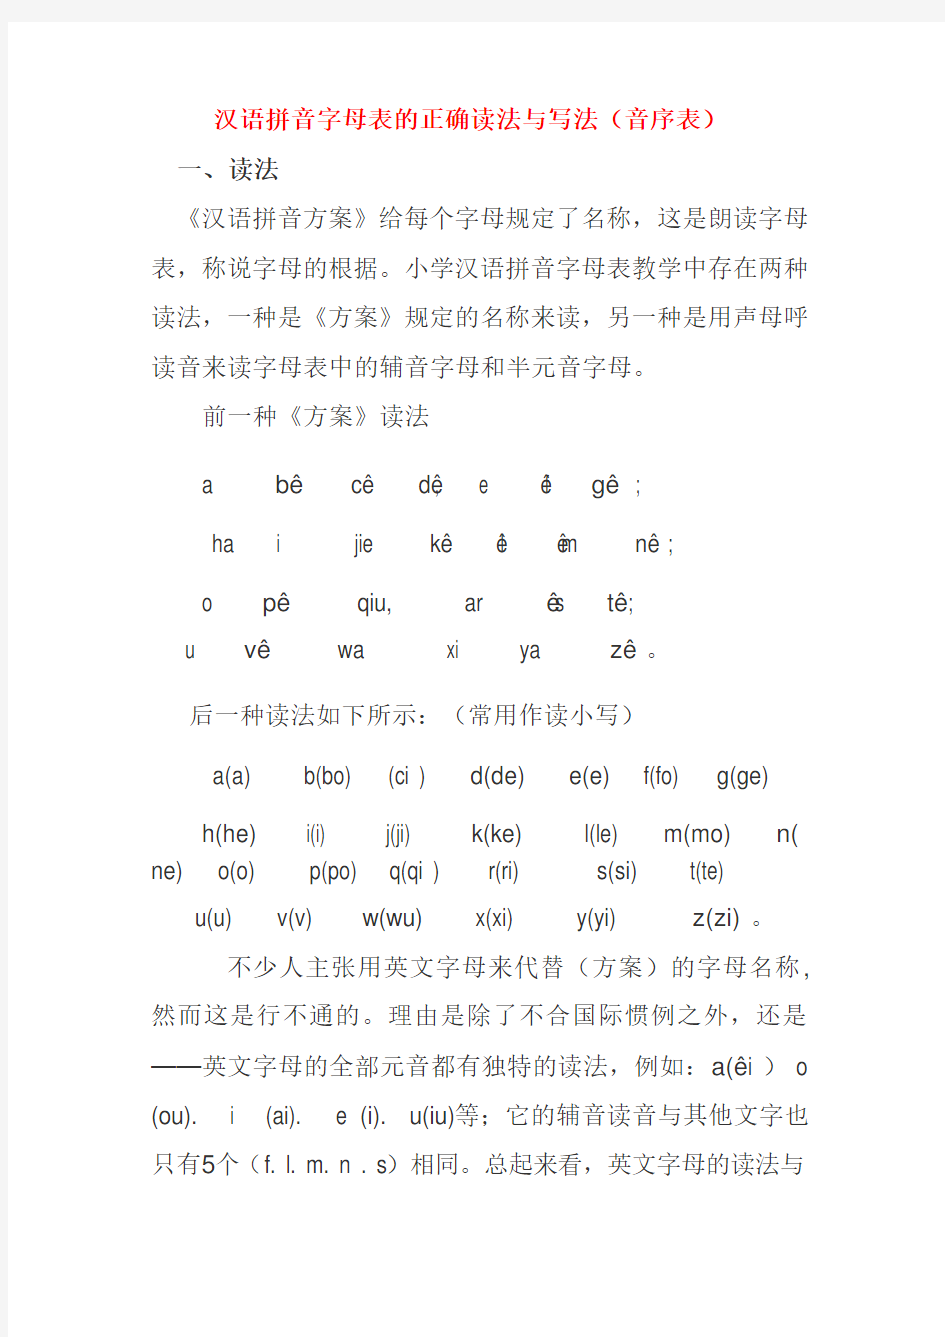 汉语拼音字母表正确读法与写法(音序表)